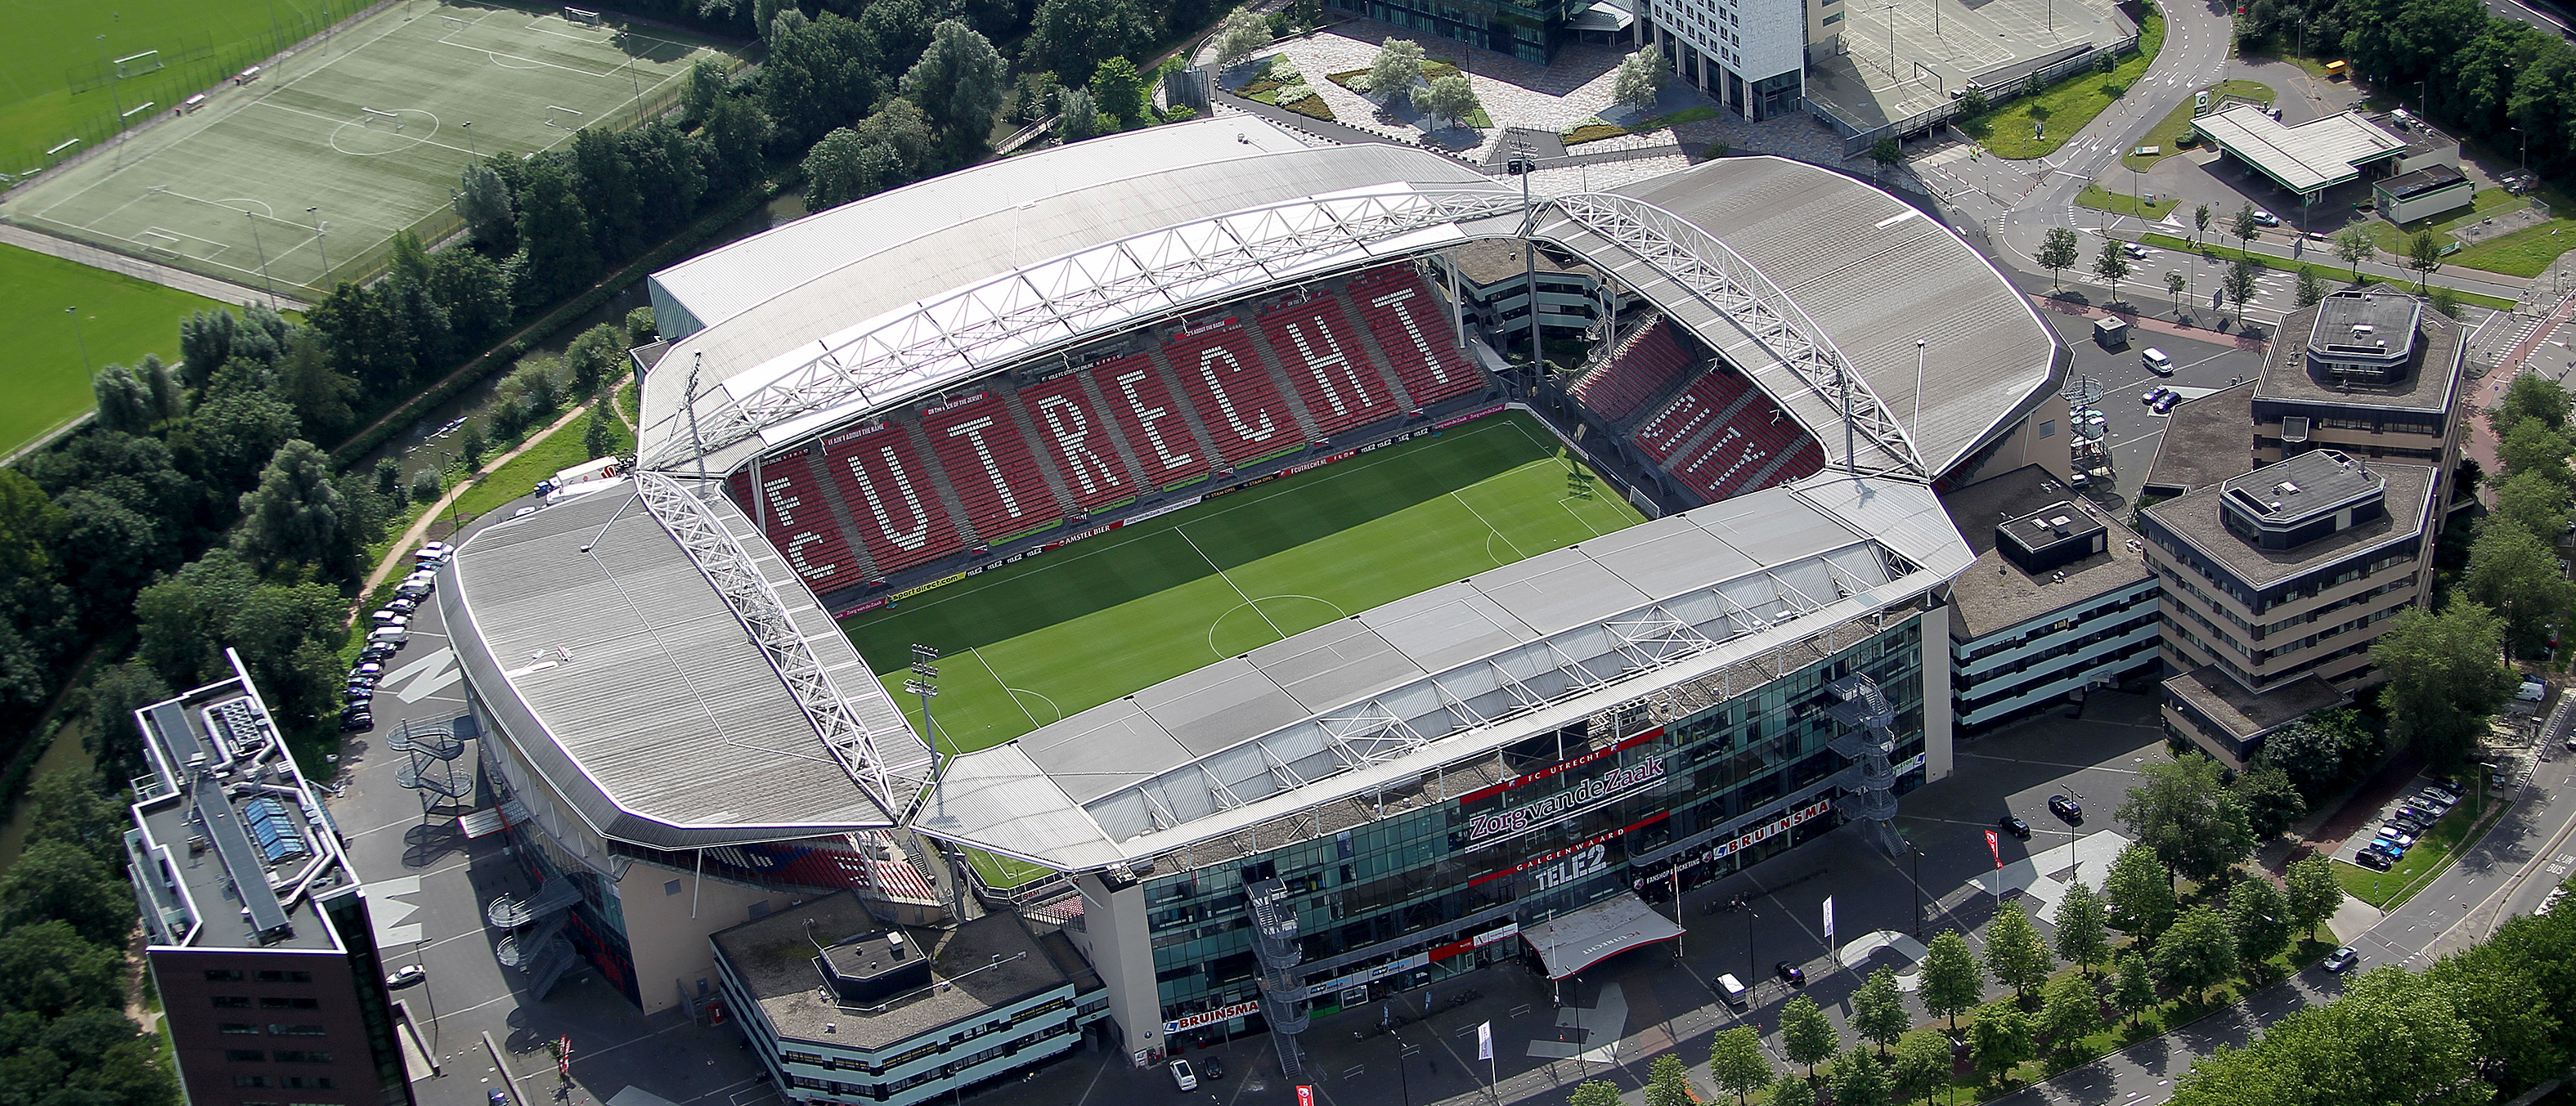 Informatie bezoekregeling oefenwedstrijden FC Utrecht in augustus